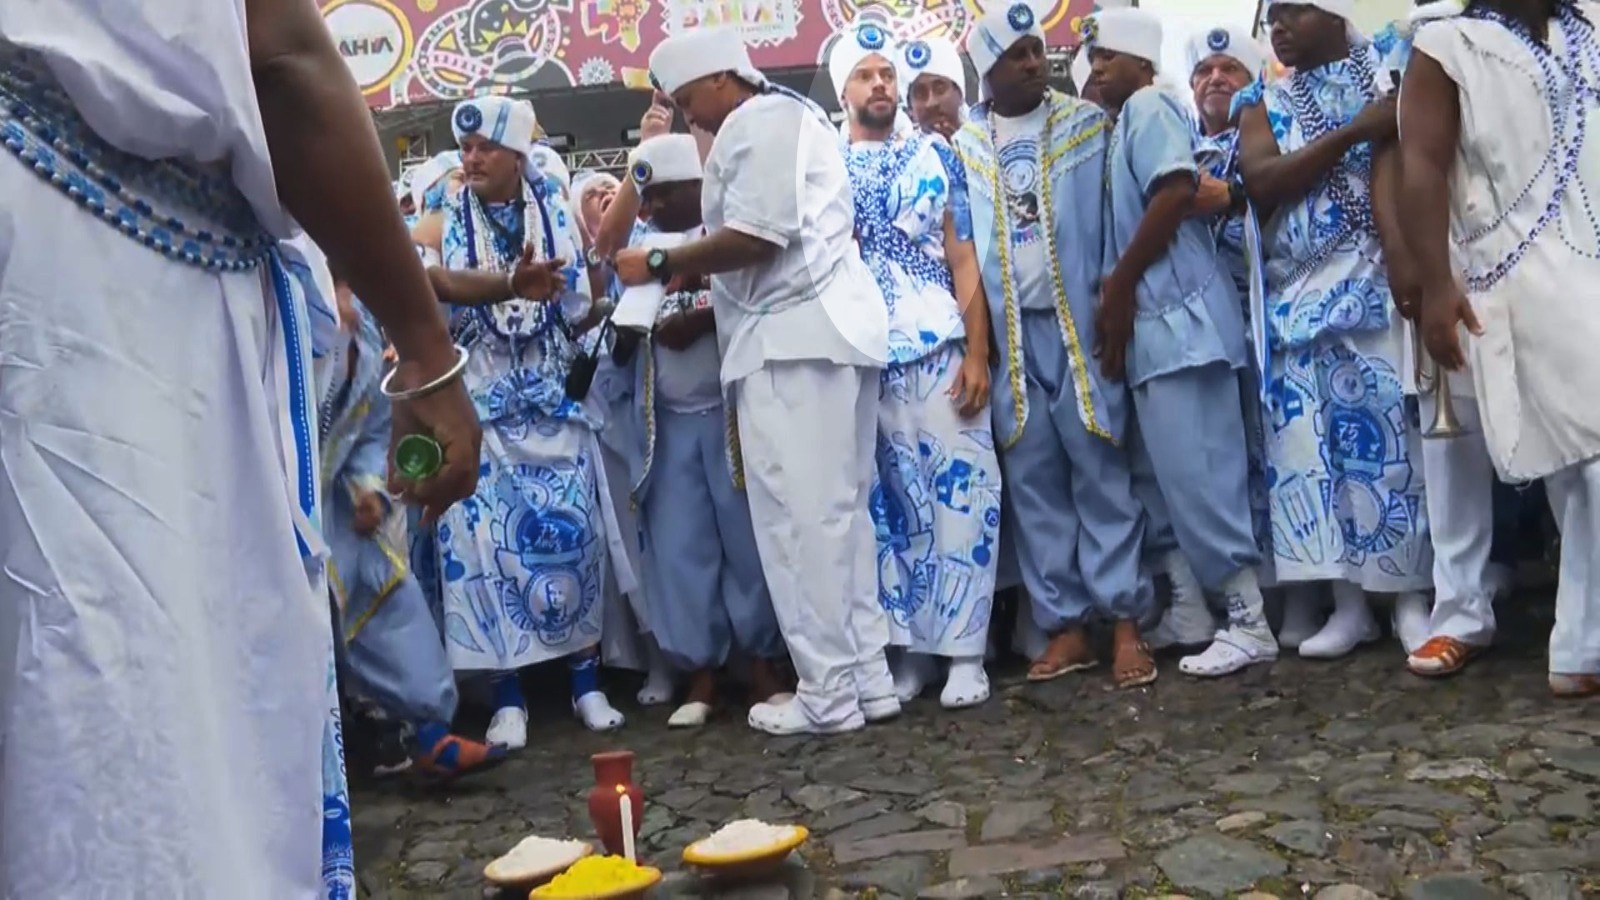 Humberto Carrão, Evaldo Macarrão e Paulo Lessa desfilam com Filhos de Gandhy, tradicional bloco afro do carnaval de Salvador